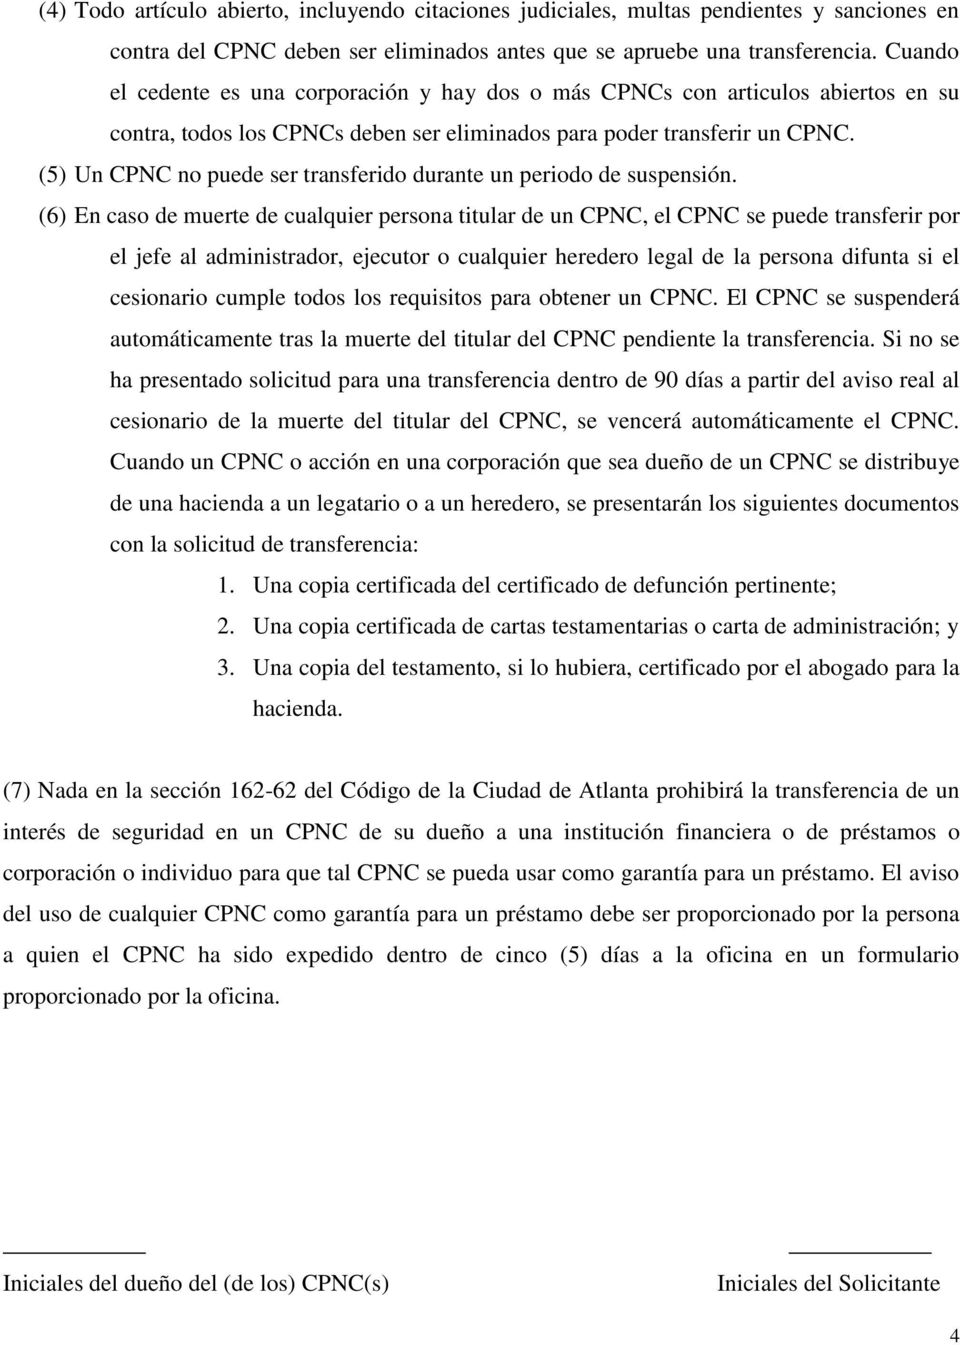 (5) Un CPNC no puede ser transferido durante un periodo de suspensión.